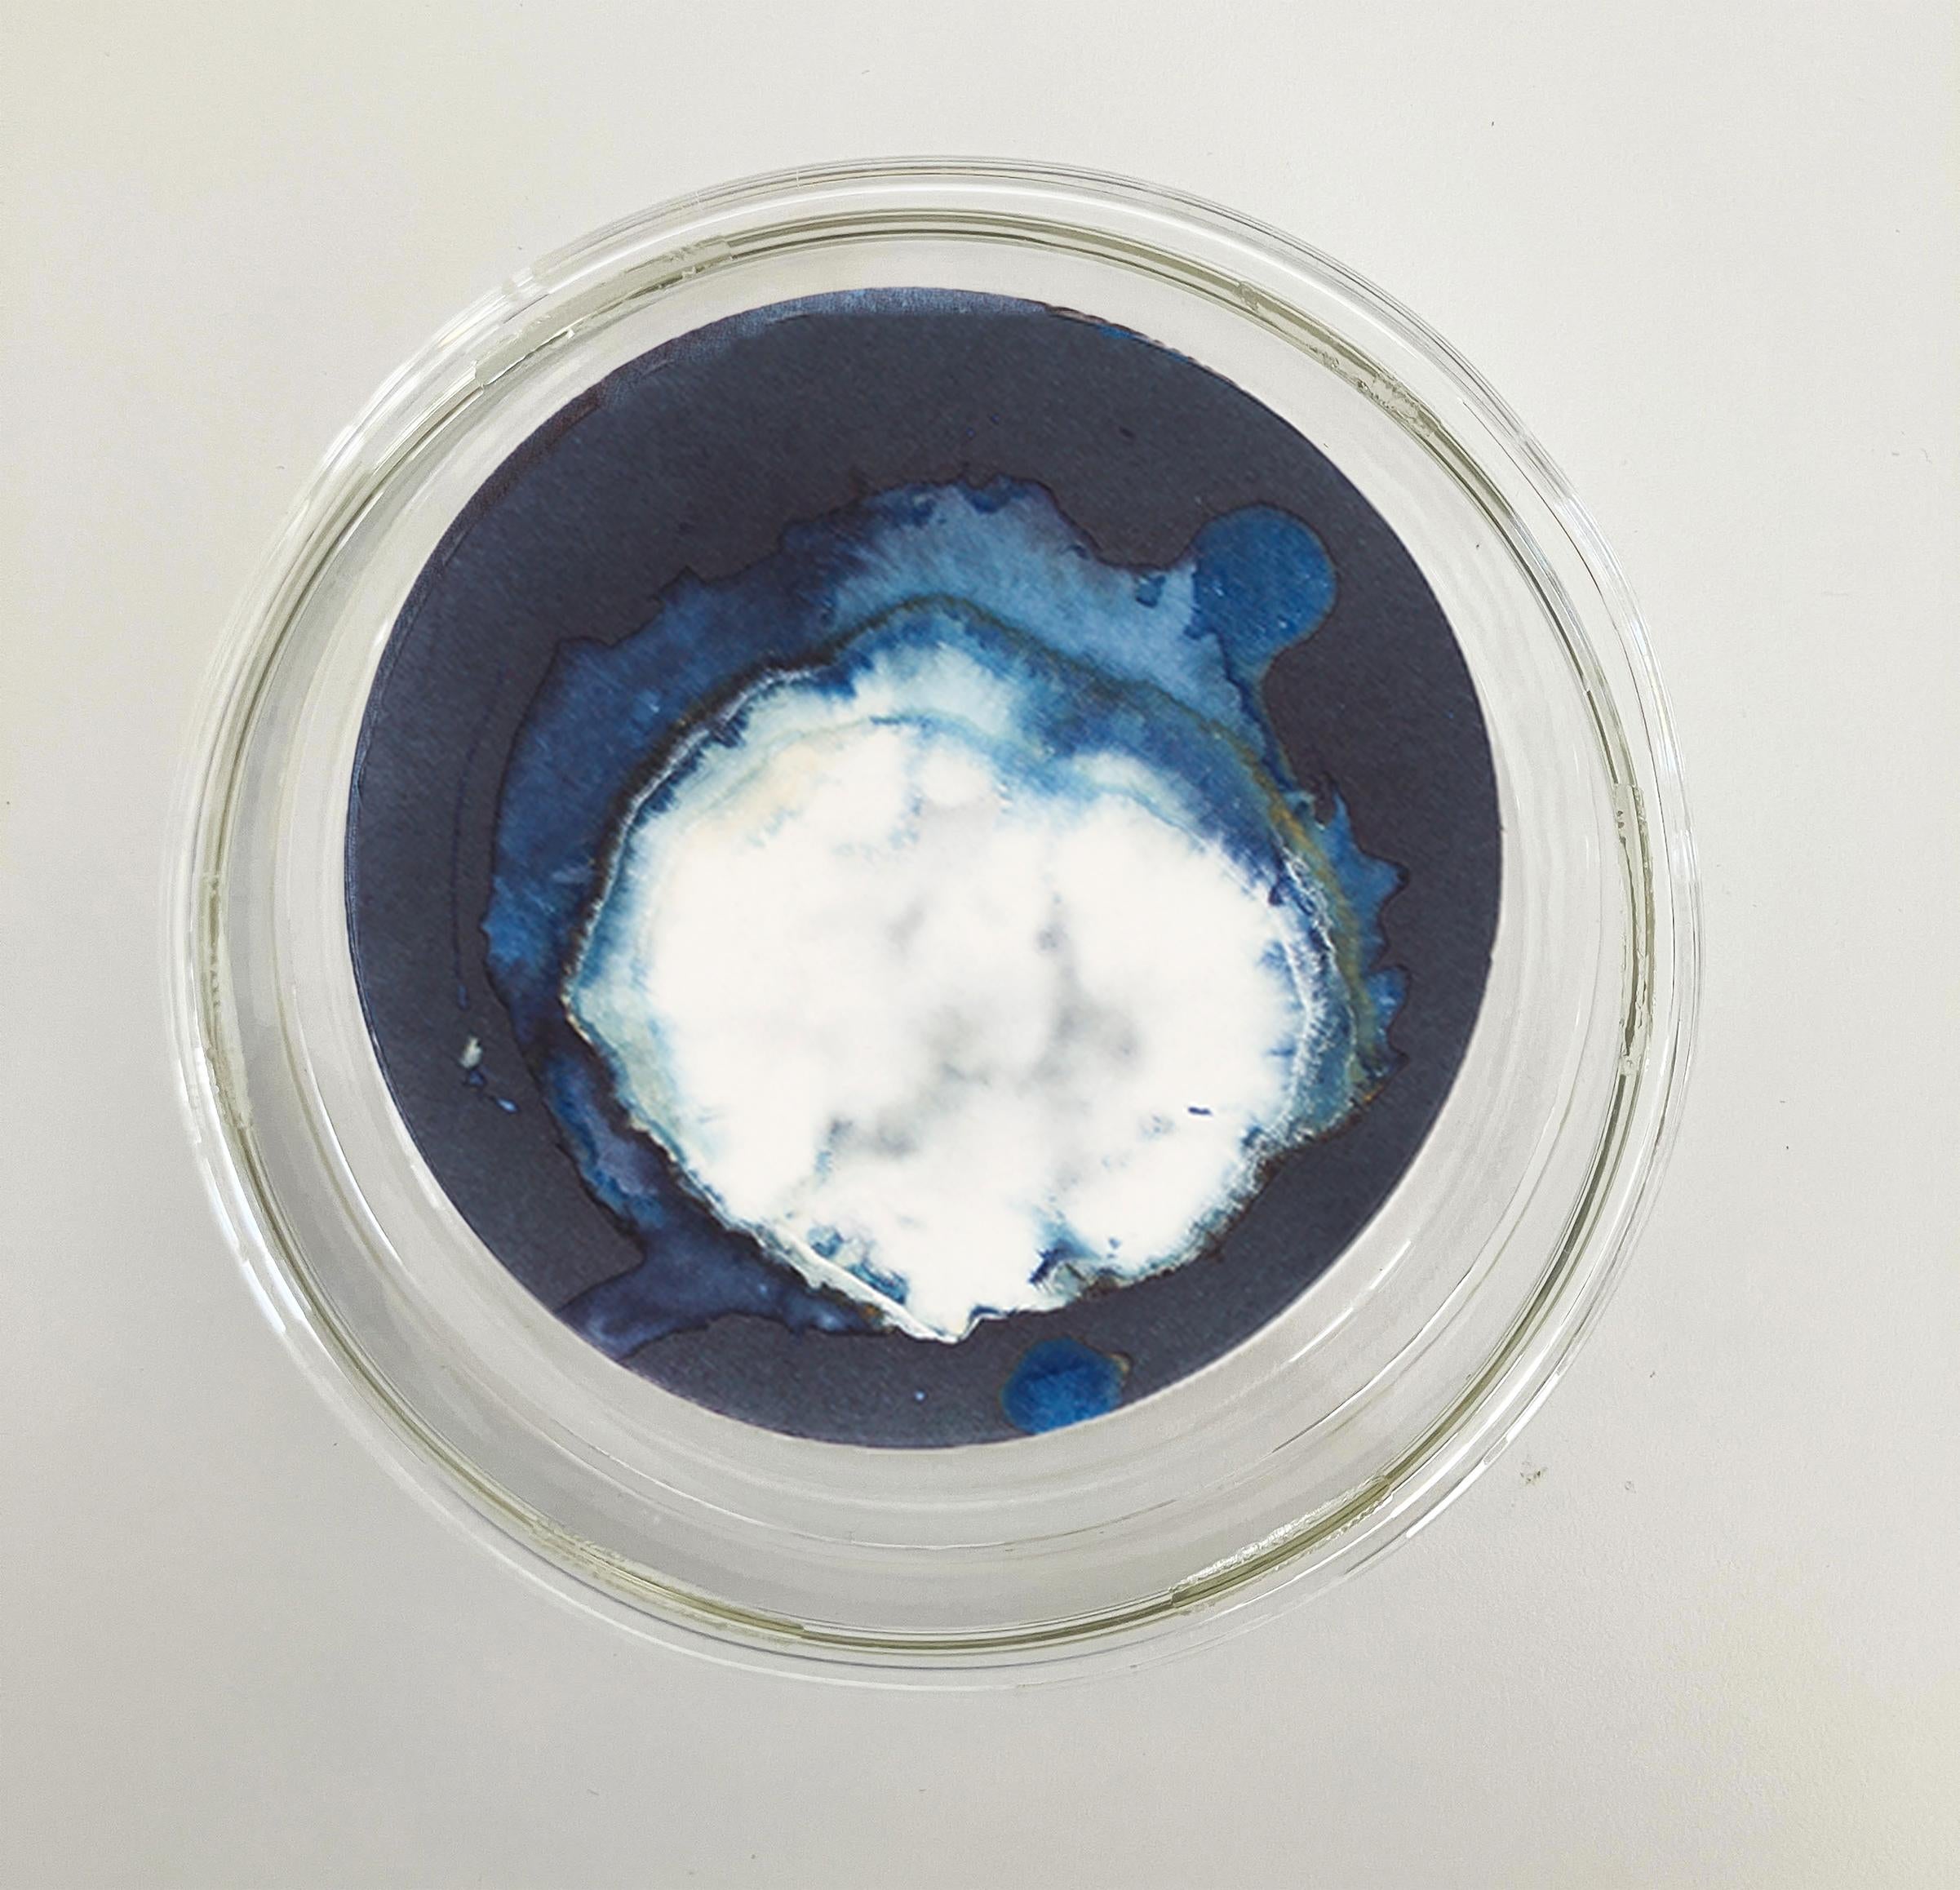 Esponjas 8, 11 und 16. Cyanotypie-Fotografien, montiert in einer hochfesten Glasschale – Sculpture von Paola Davila